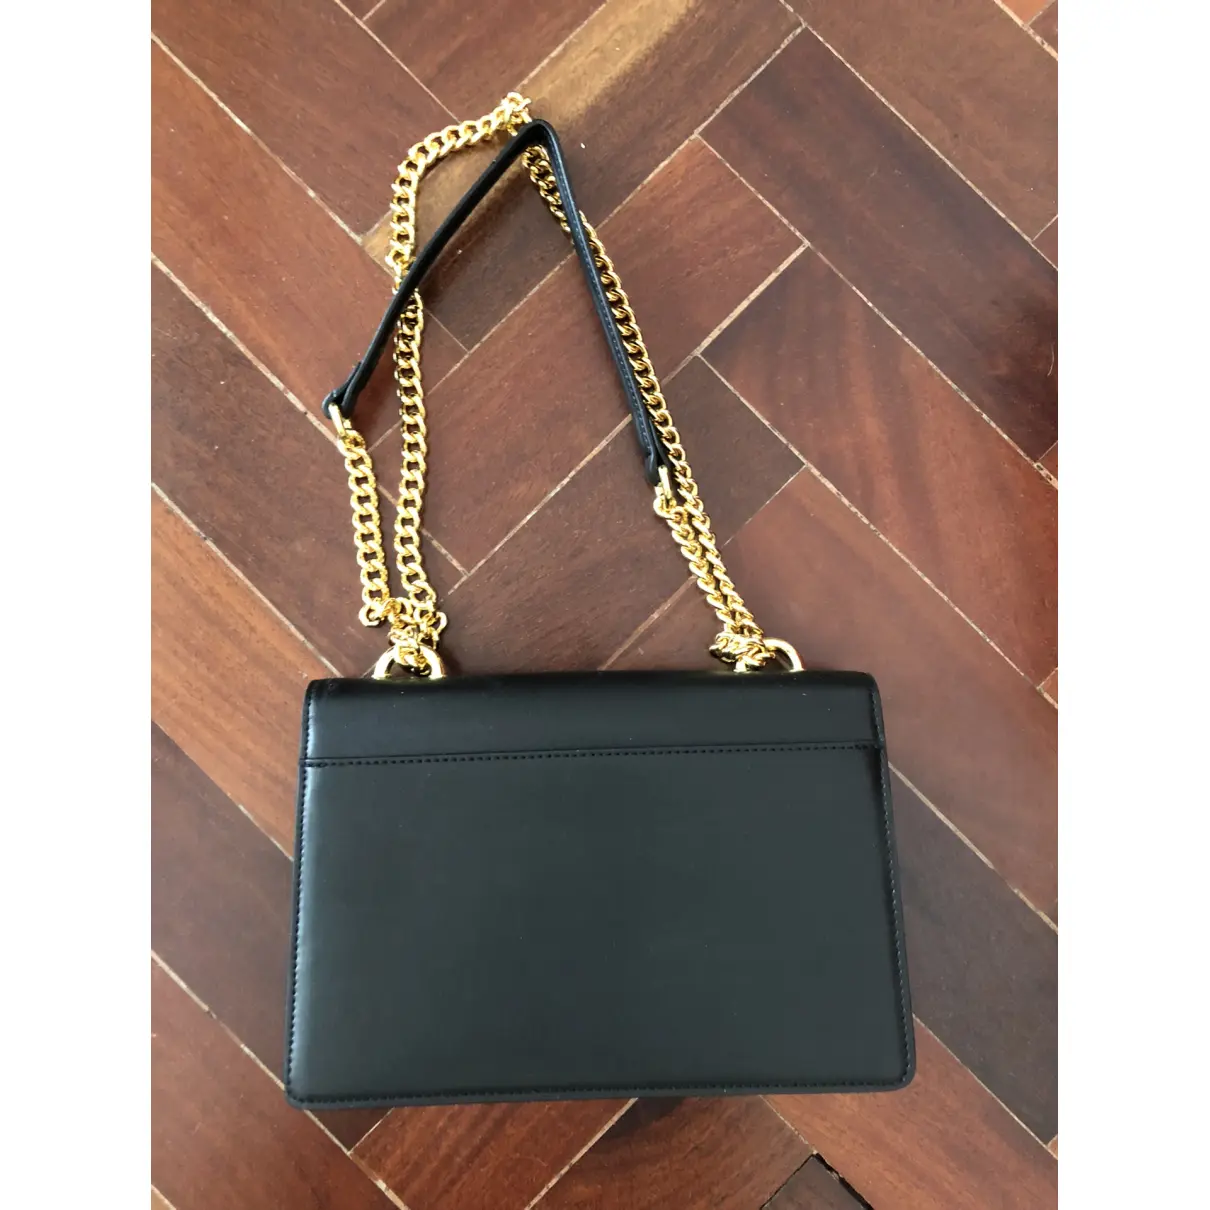 Leather handbag JW PEI